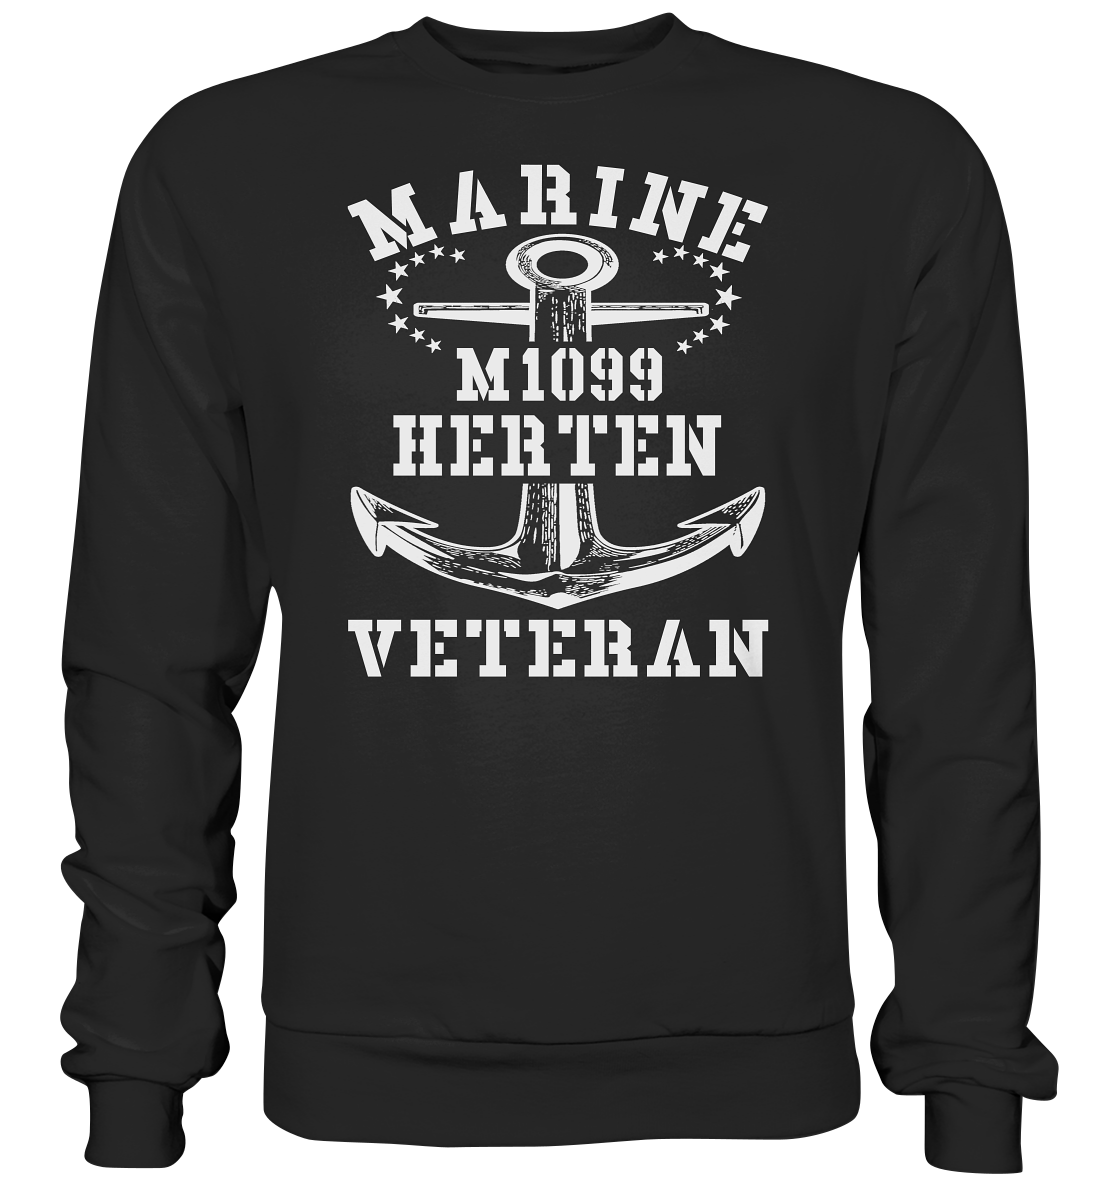 M1099 HERTEN Marine Veteran - Premium Sweatshirt